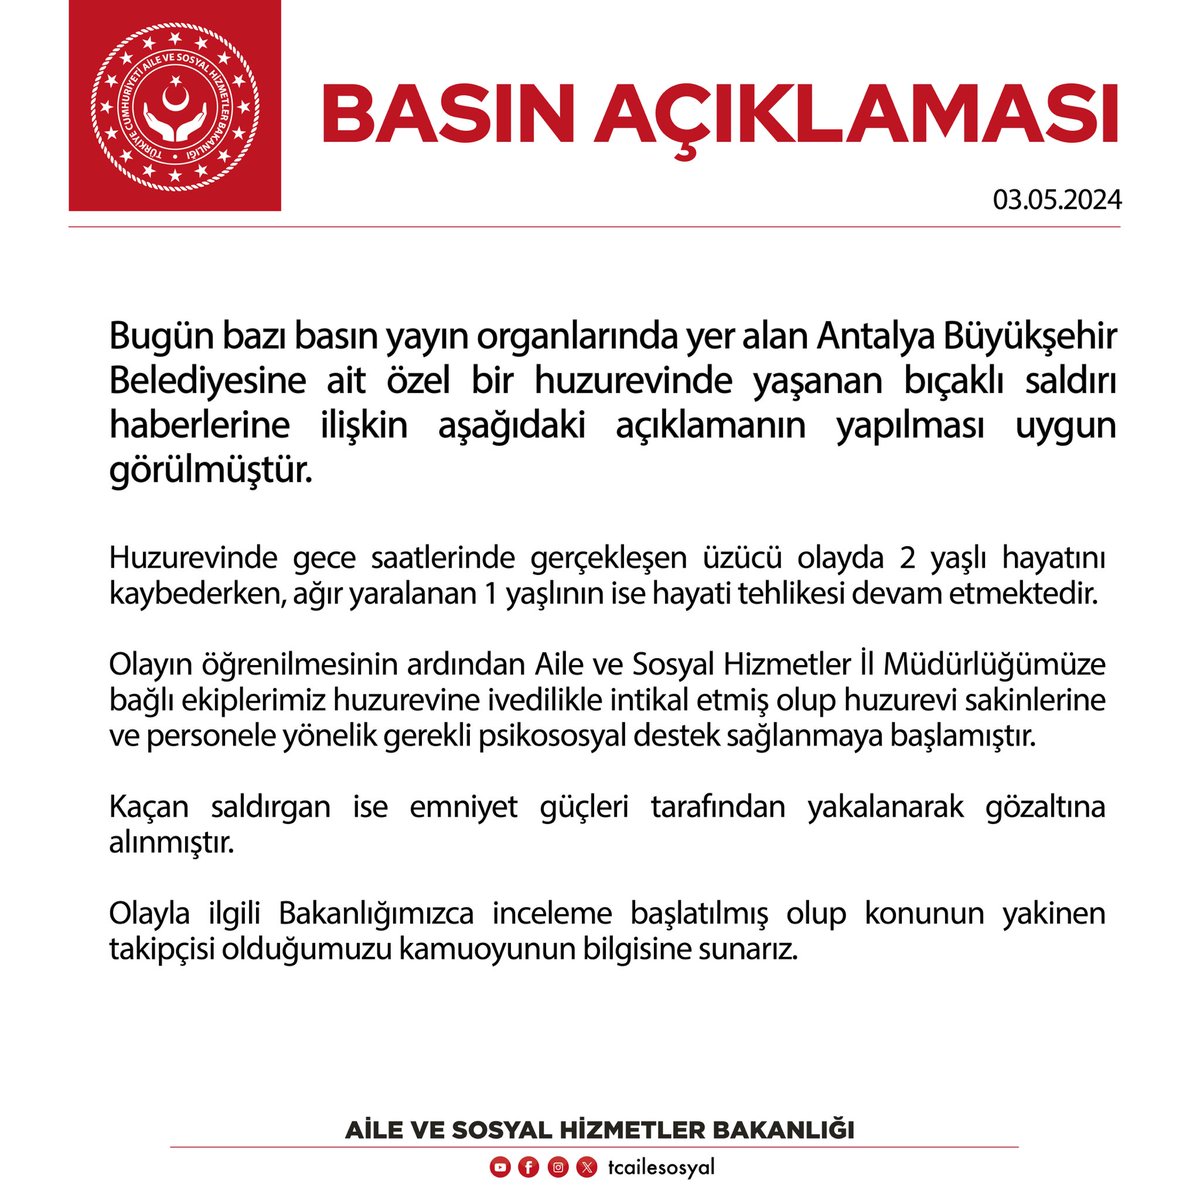 ❗️ Antalya Büyükşehir Belediyesine ait özel huzurevinde yaşanan bıçaklı saldırıya ilişkin basın açıklamamız